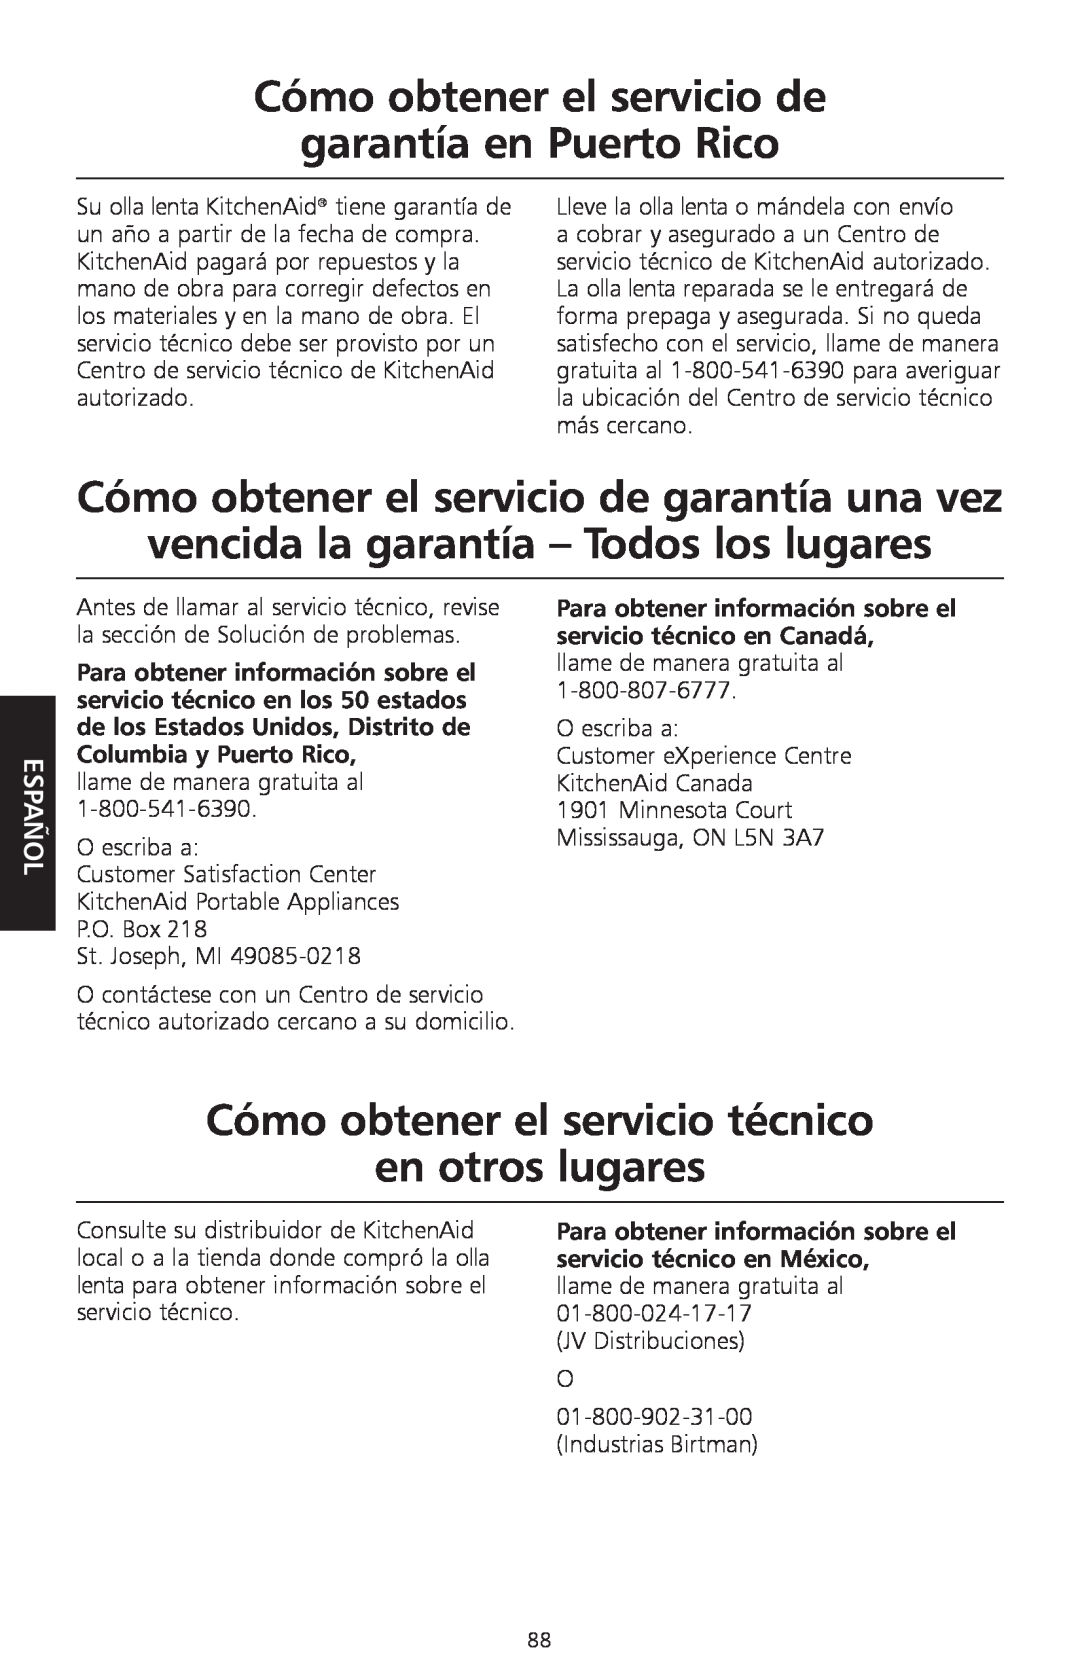 KitchenAid KSC700 manual garantía en Puerto Rico, Cómo obtener el servicio de garantía una vez, Español 